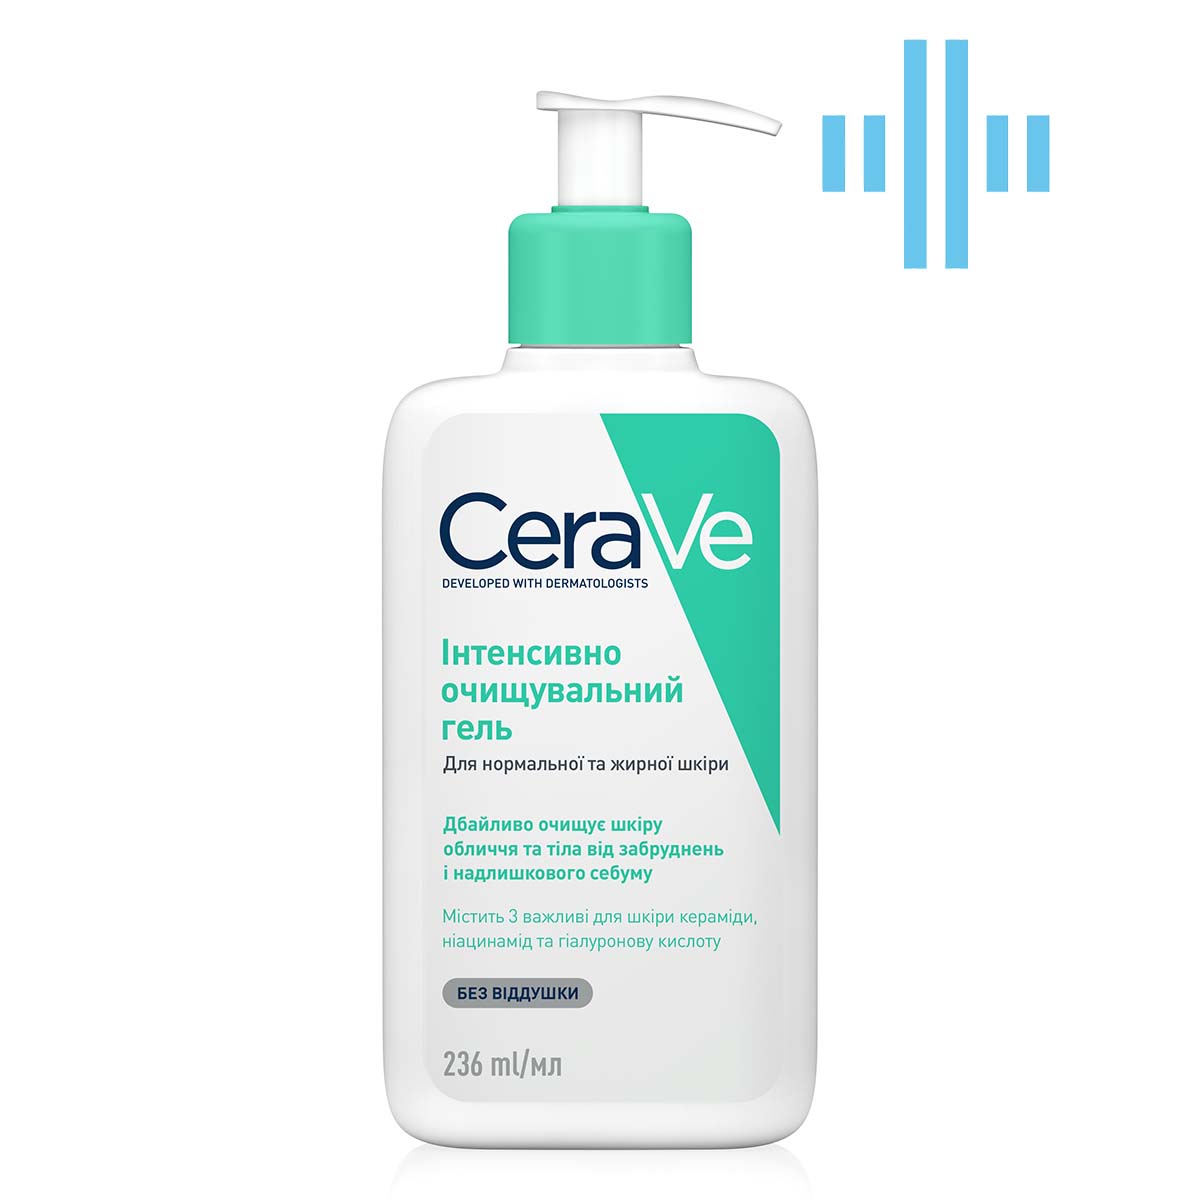 Интенсивно очищающий гель CeraVe для нормальной и жирной кожи лица и тела, 236 мл (MB299200) - фото 1